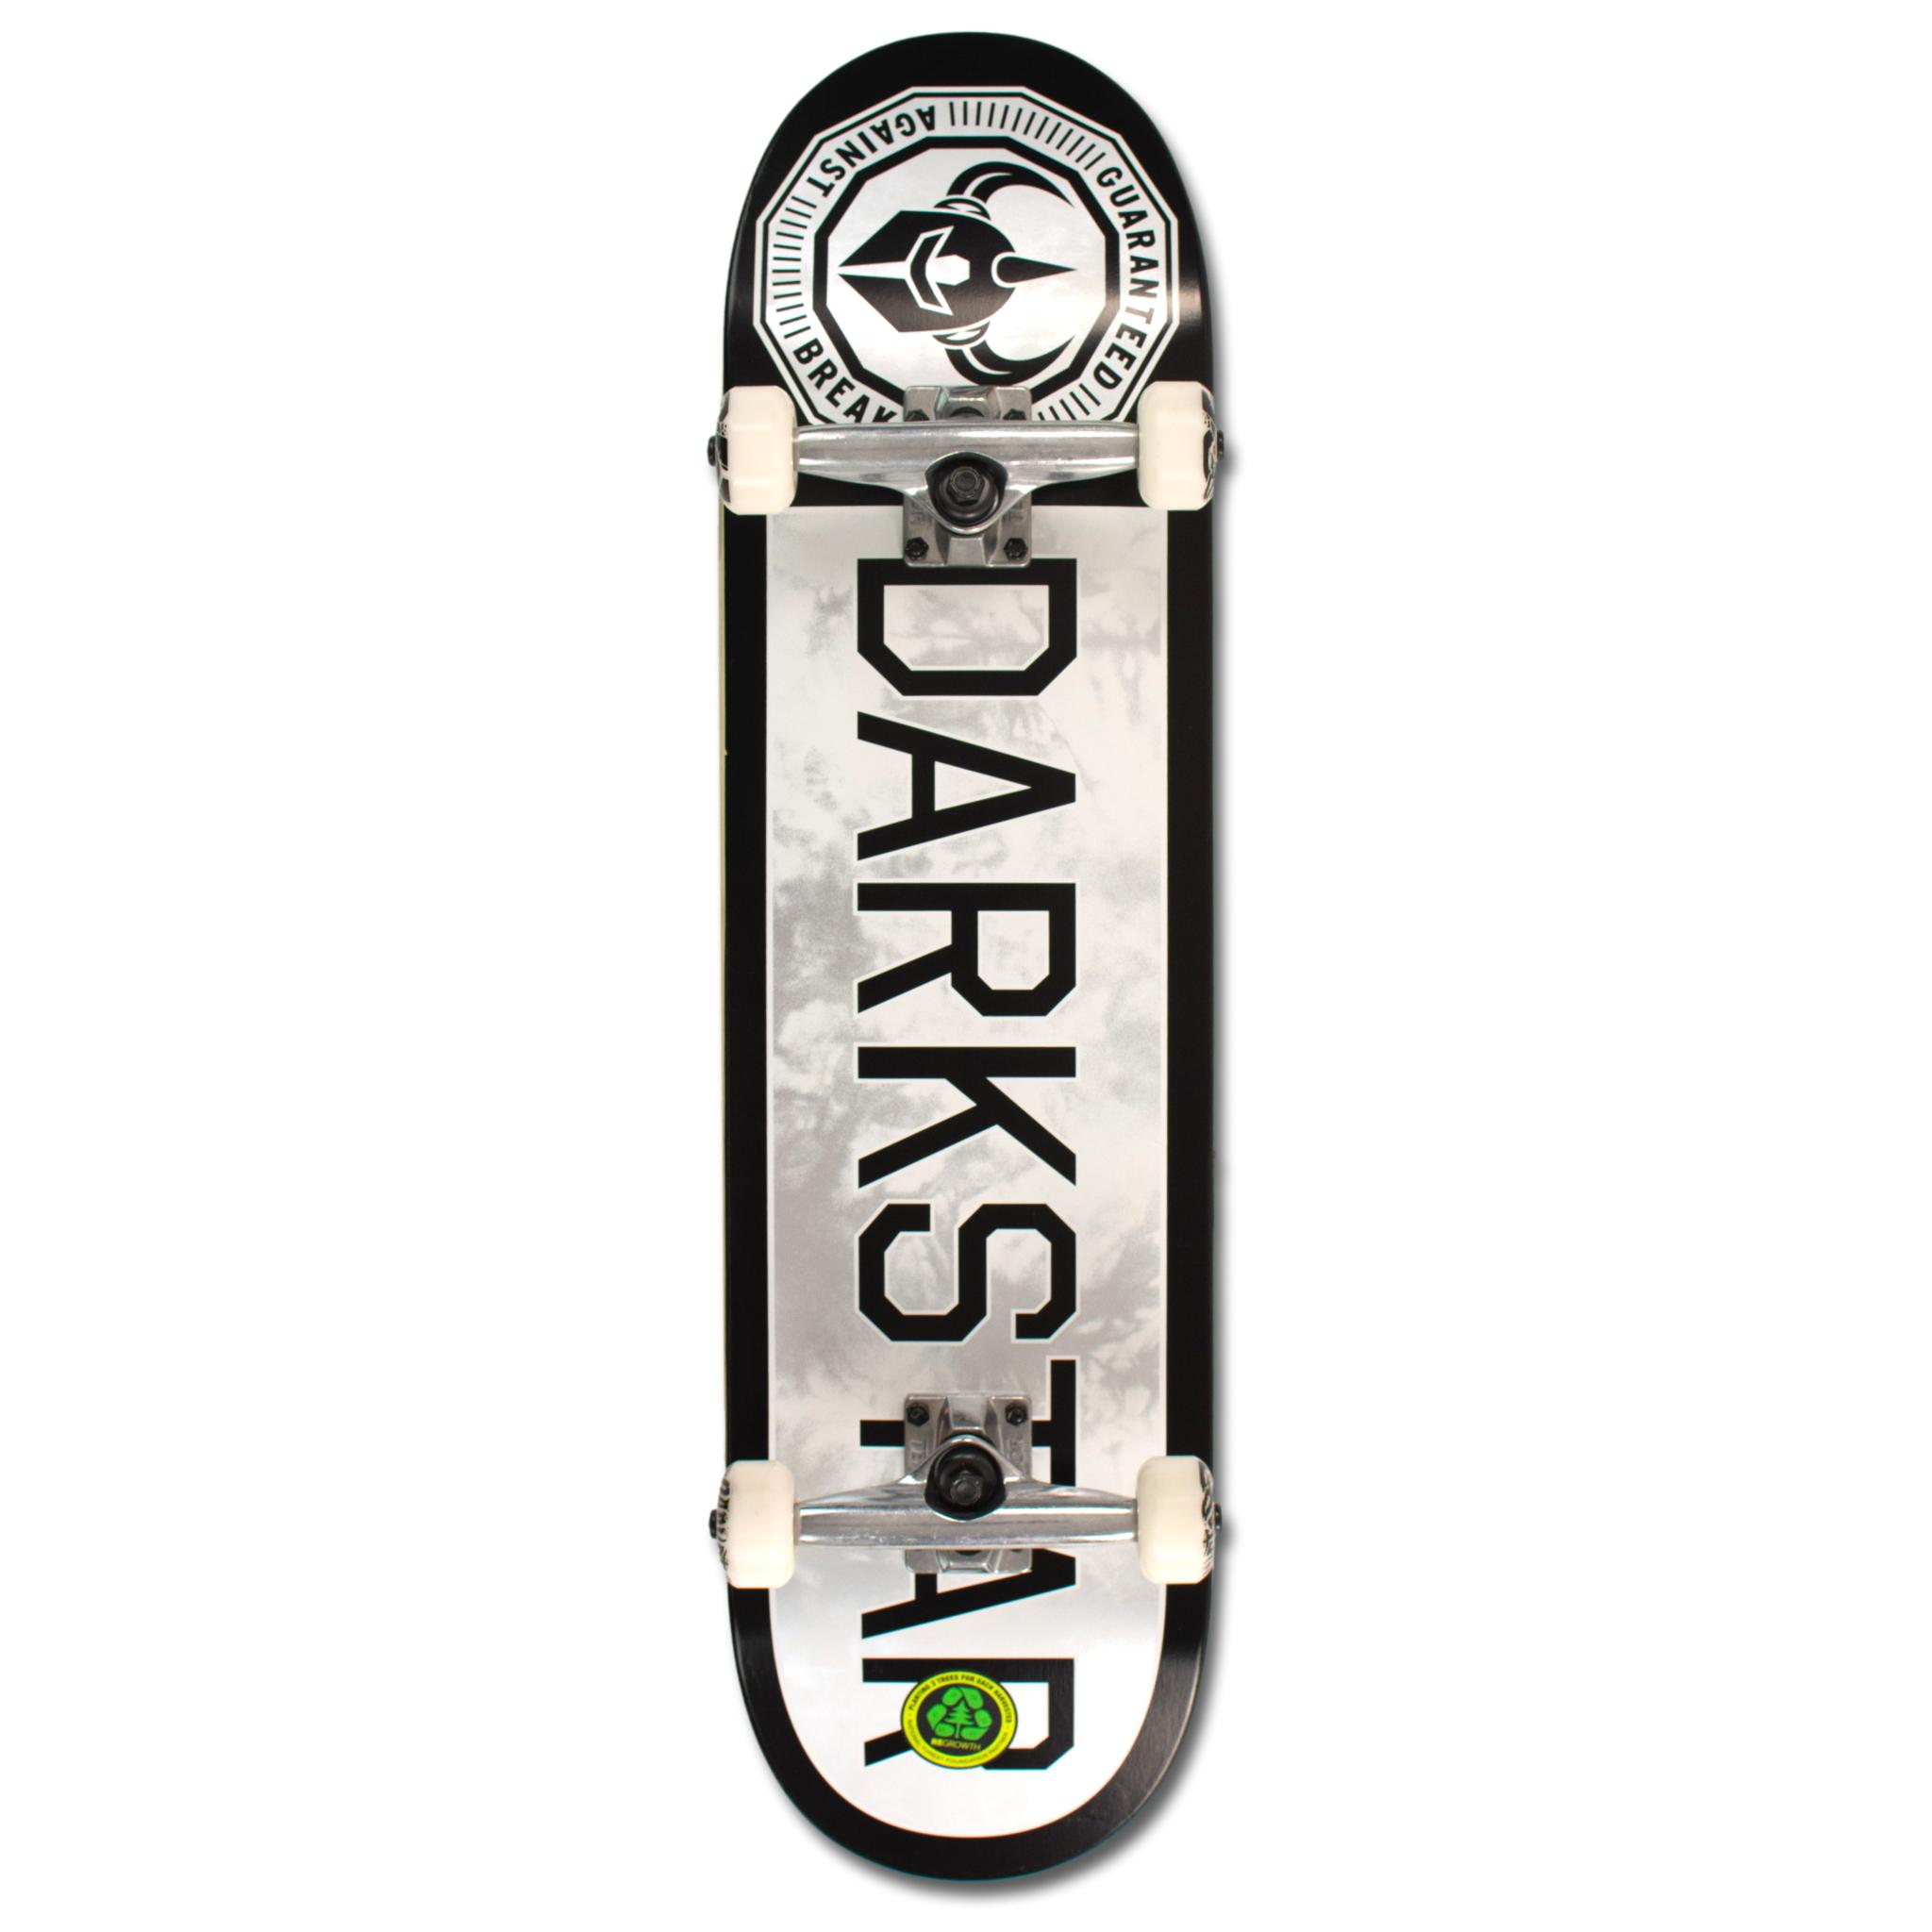 Darkstar timeworks skateboard completo 8.25